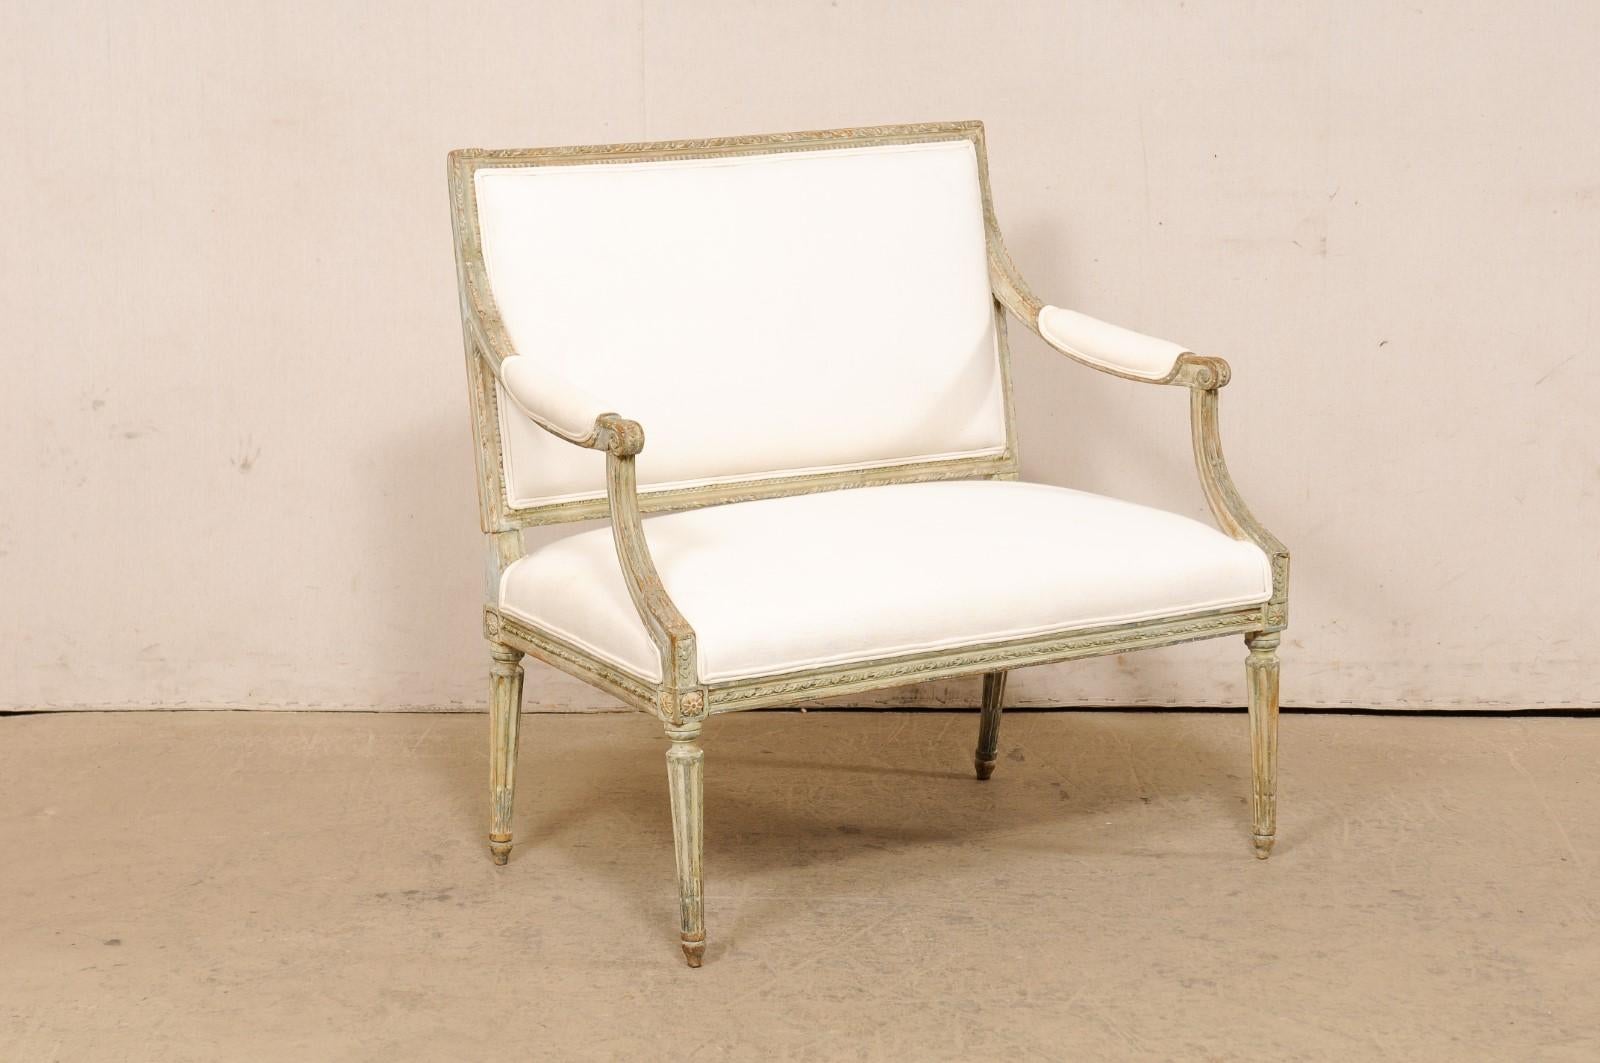 Eine geschnitzte und gepolsterte Marquise im französischen Louis-XVI-Stil aus dem 19. Jahrhundert. Dieser antike Anderthalb-Sessel aus Frankreich, der oft als Marquise (ein breiter Fauteuils-Stuhl) bezeichnet wird, zeigt das gesamte dekorative